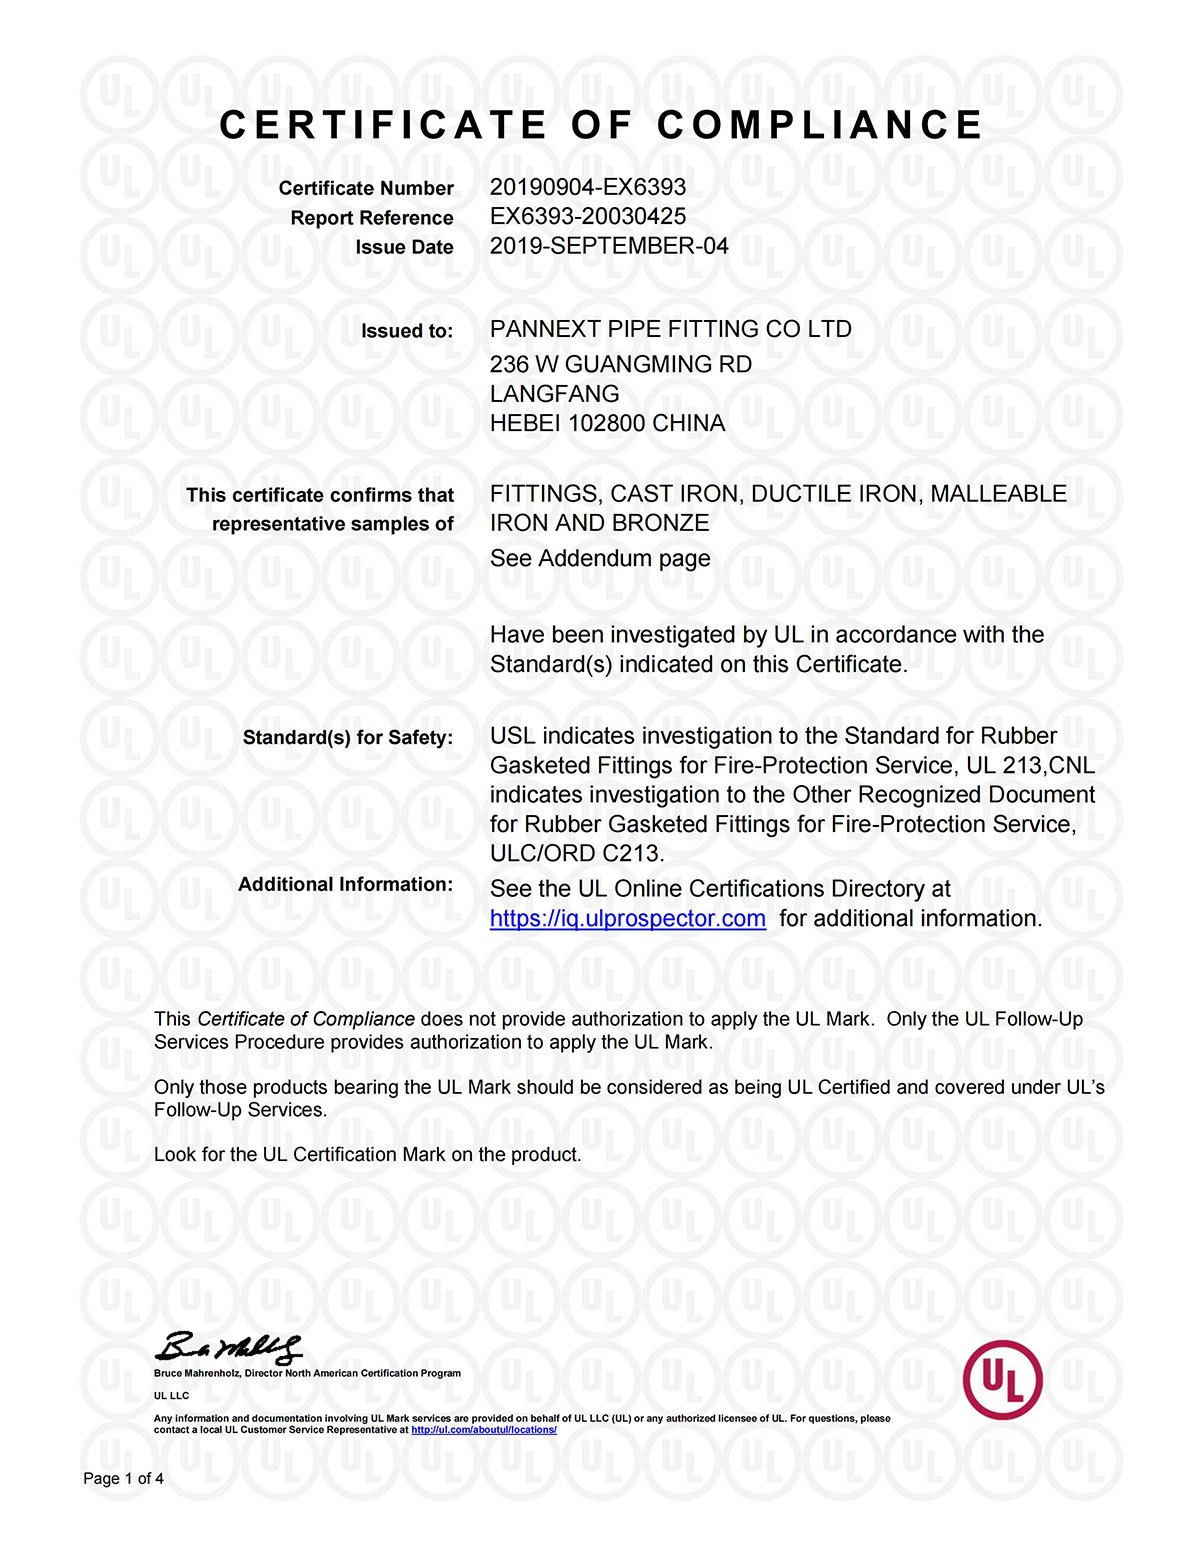 UL-i sertifikaat 3-0